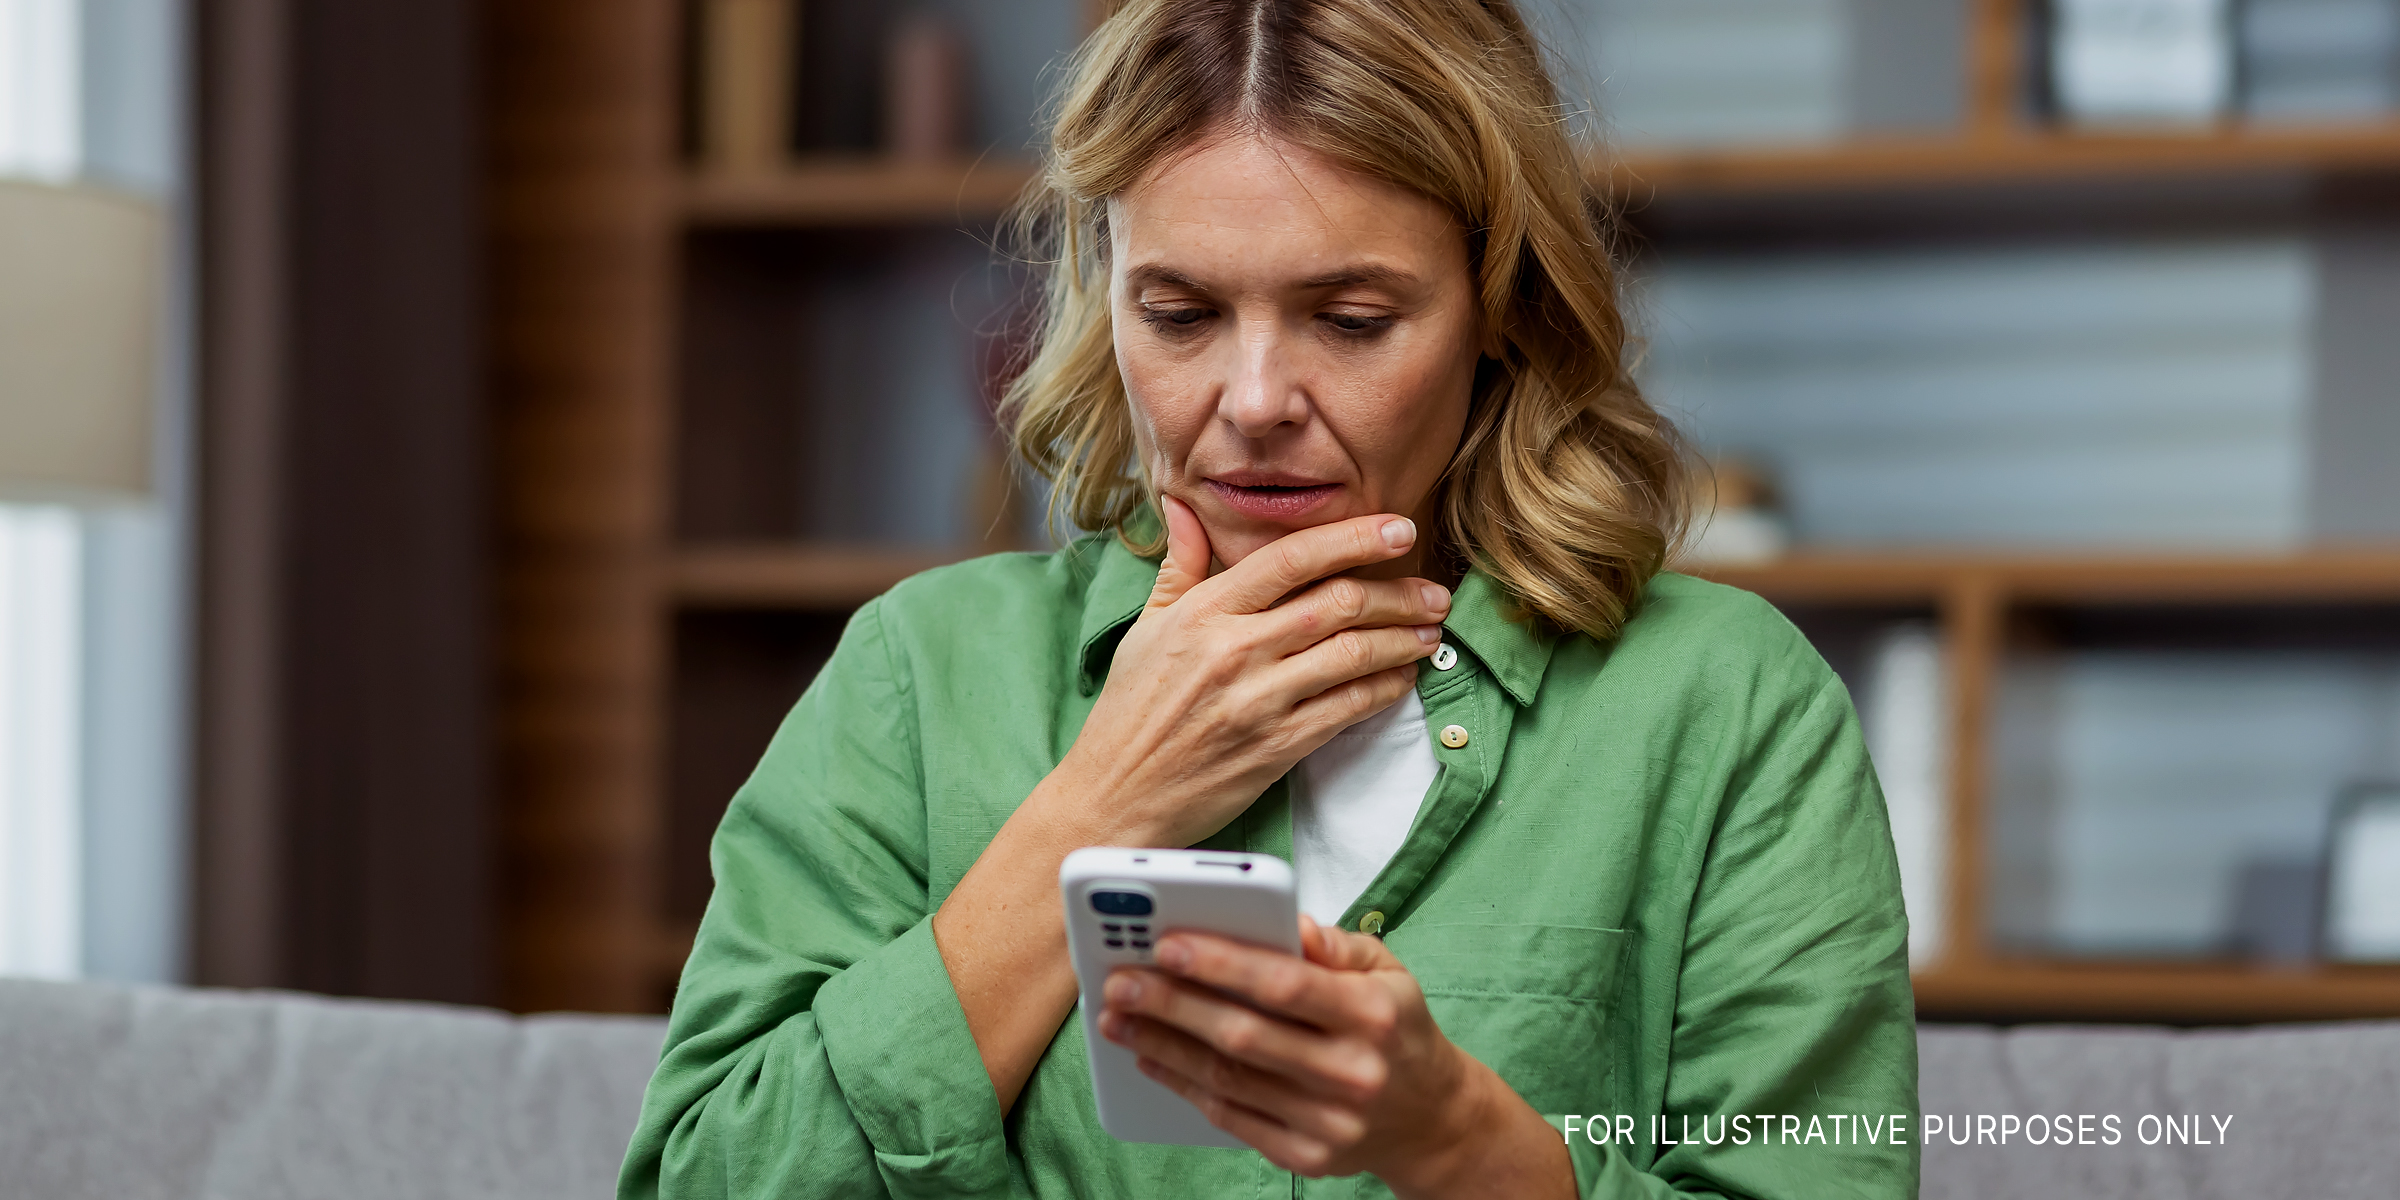 Frau schaut ratlos auf ihr Telefon | Quelle: Shutterstock